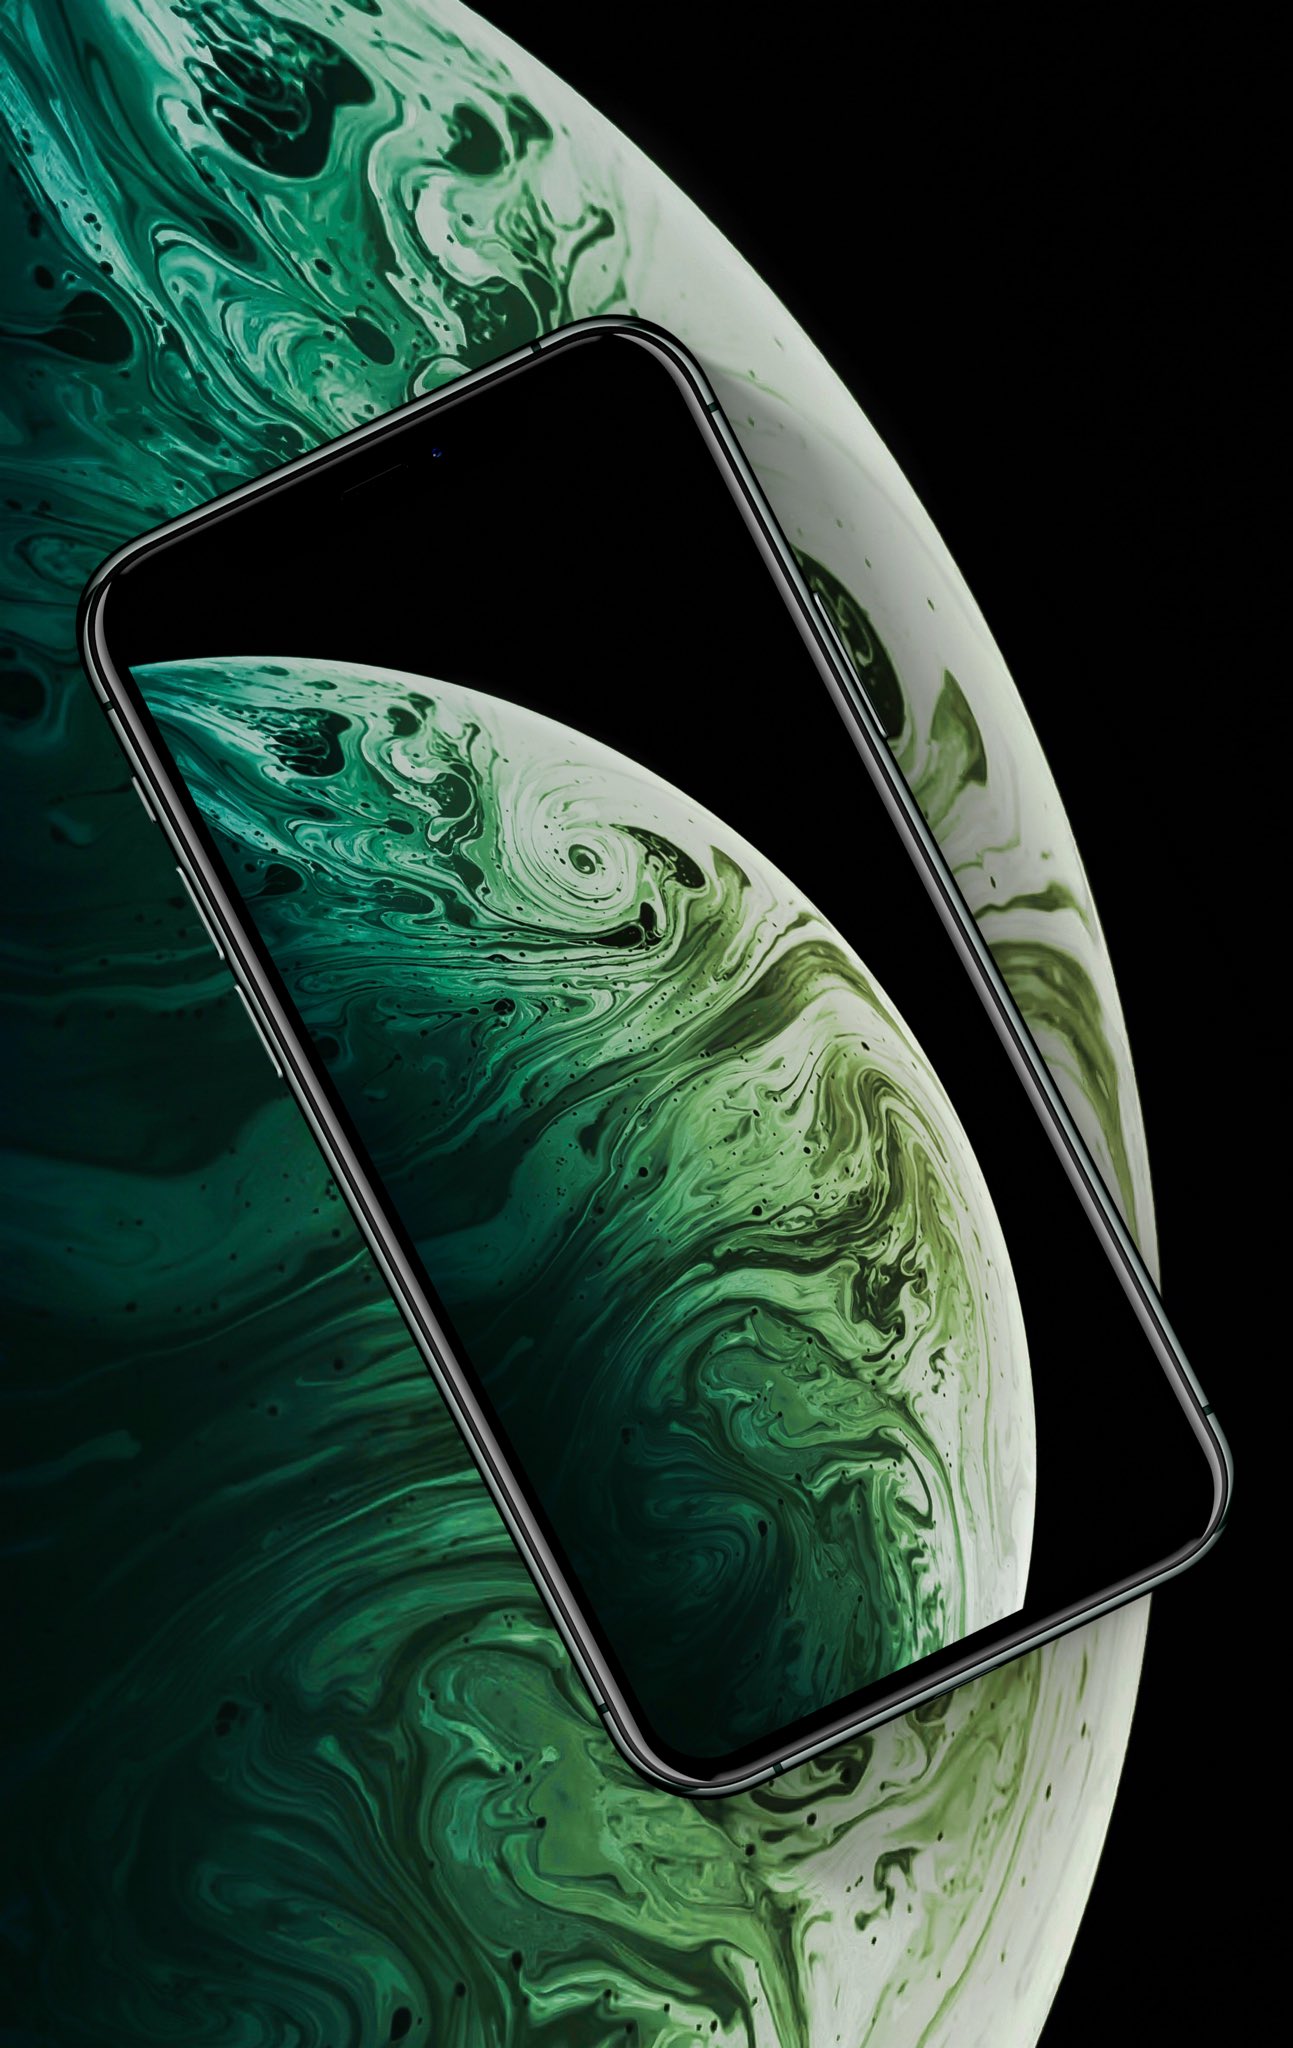 Hình nền iPhone XS MAX màu Midnight Green được AR7 chế tác với sự tín nhiệm và tâm huyết. Với nền đen tối, chữ số sáng, hình ảnh nghệ thuật và đường nét tinh tế, đây sẽ là sự lựa chọn hoàn hảo cho màn hình điện thoại của bạn. Xem ngay để cảm nhận!